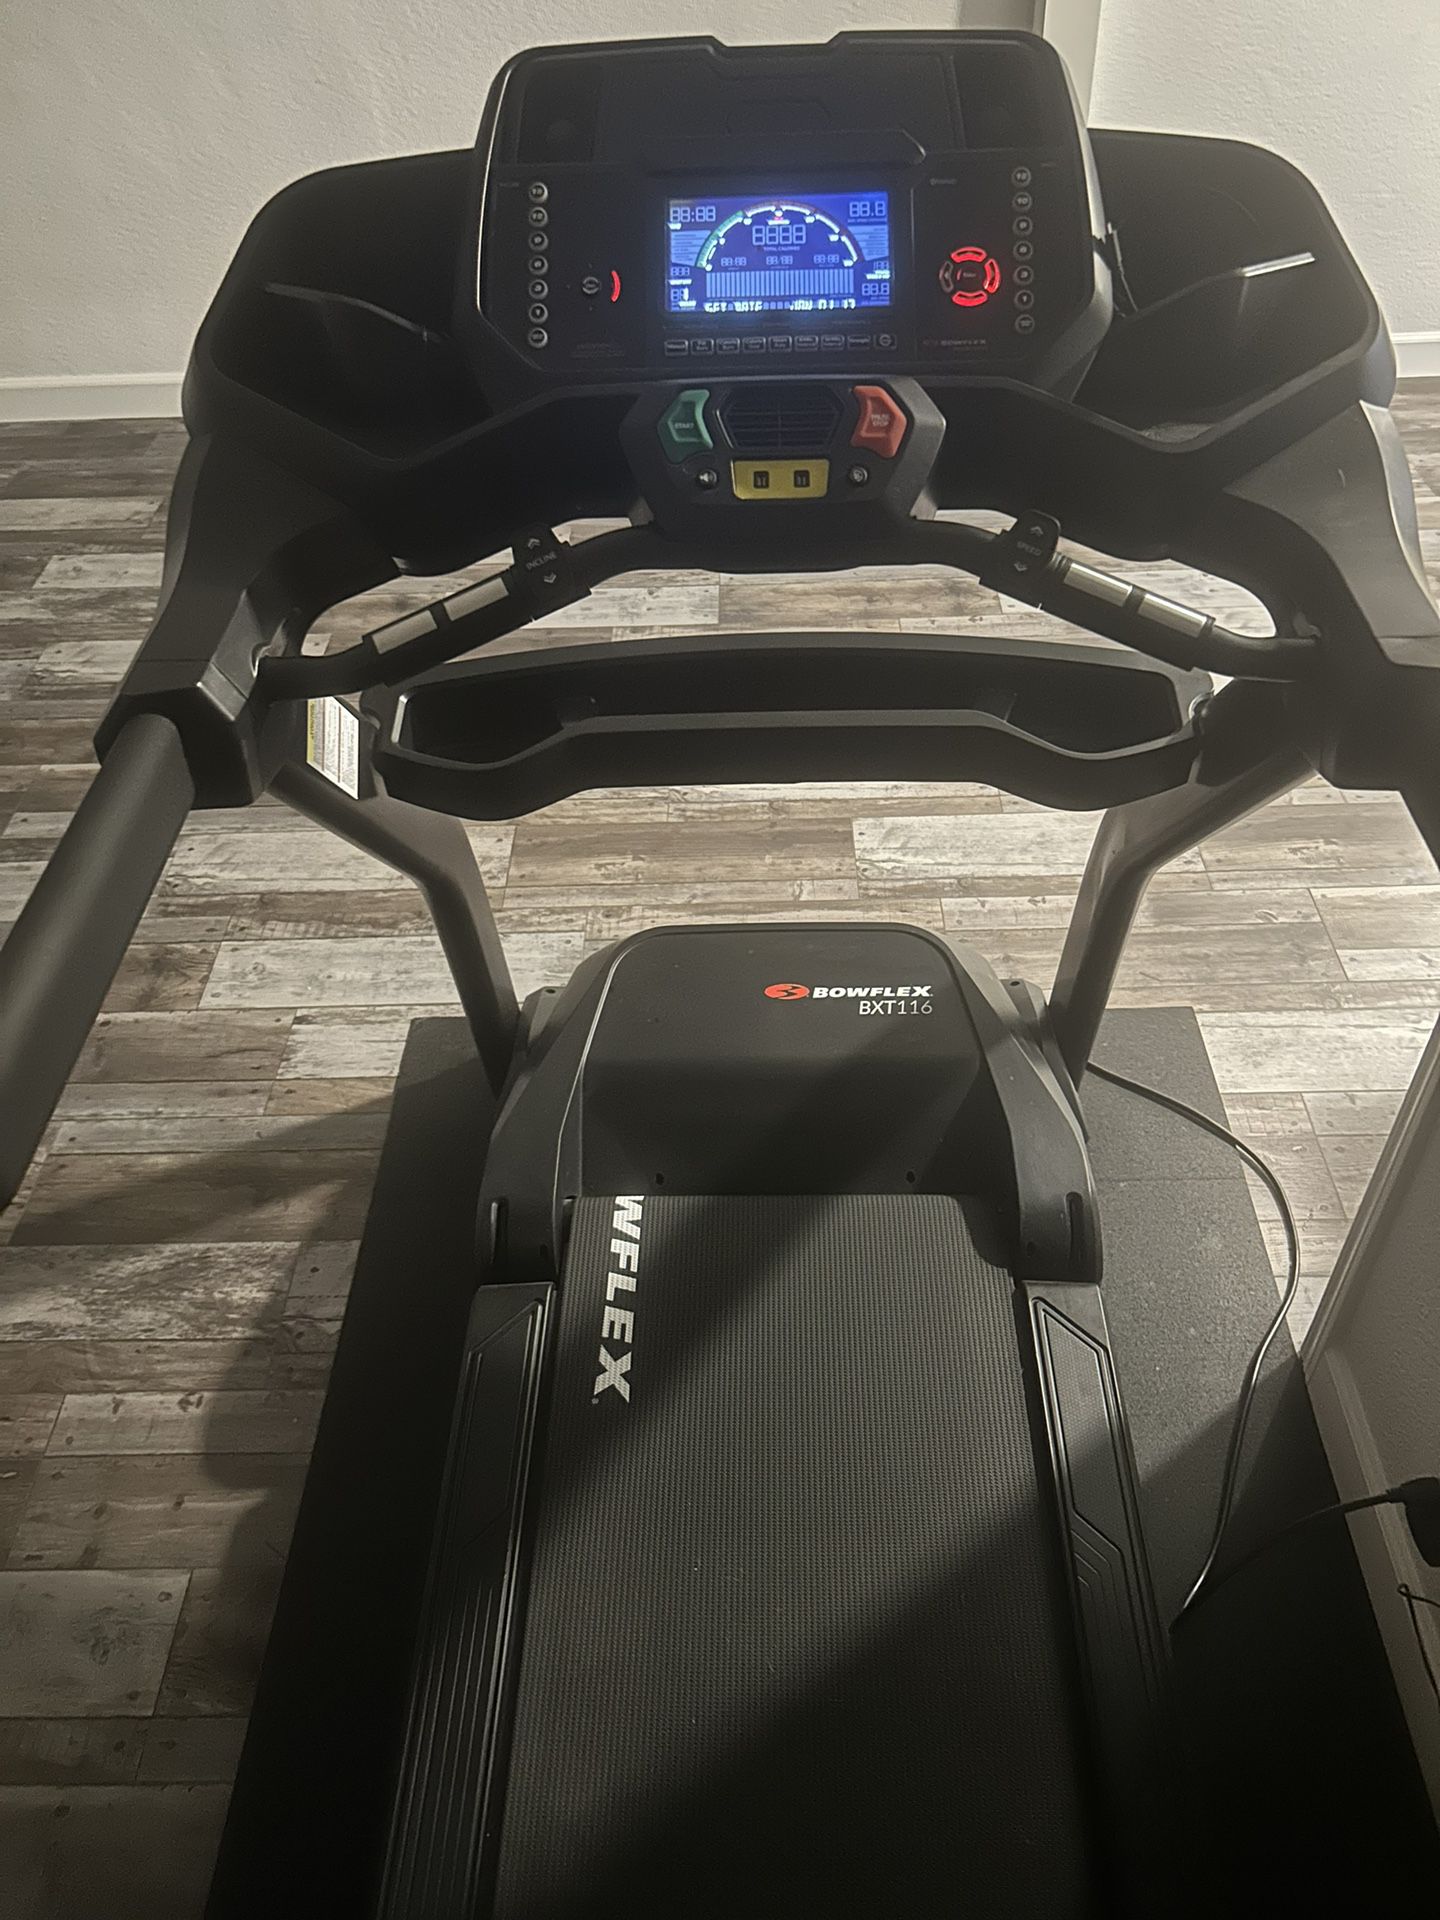  BowFlex BXT8J Treadmill 